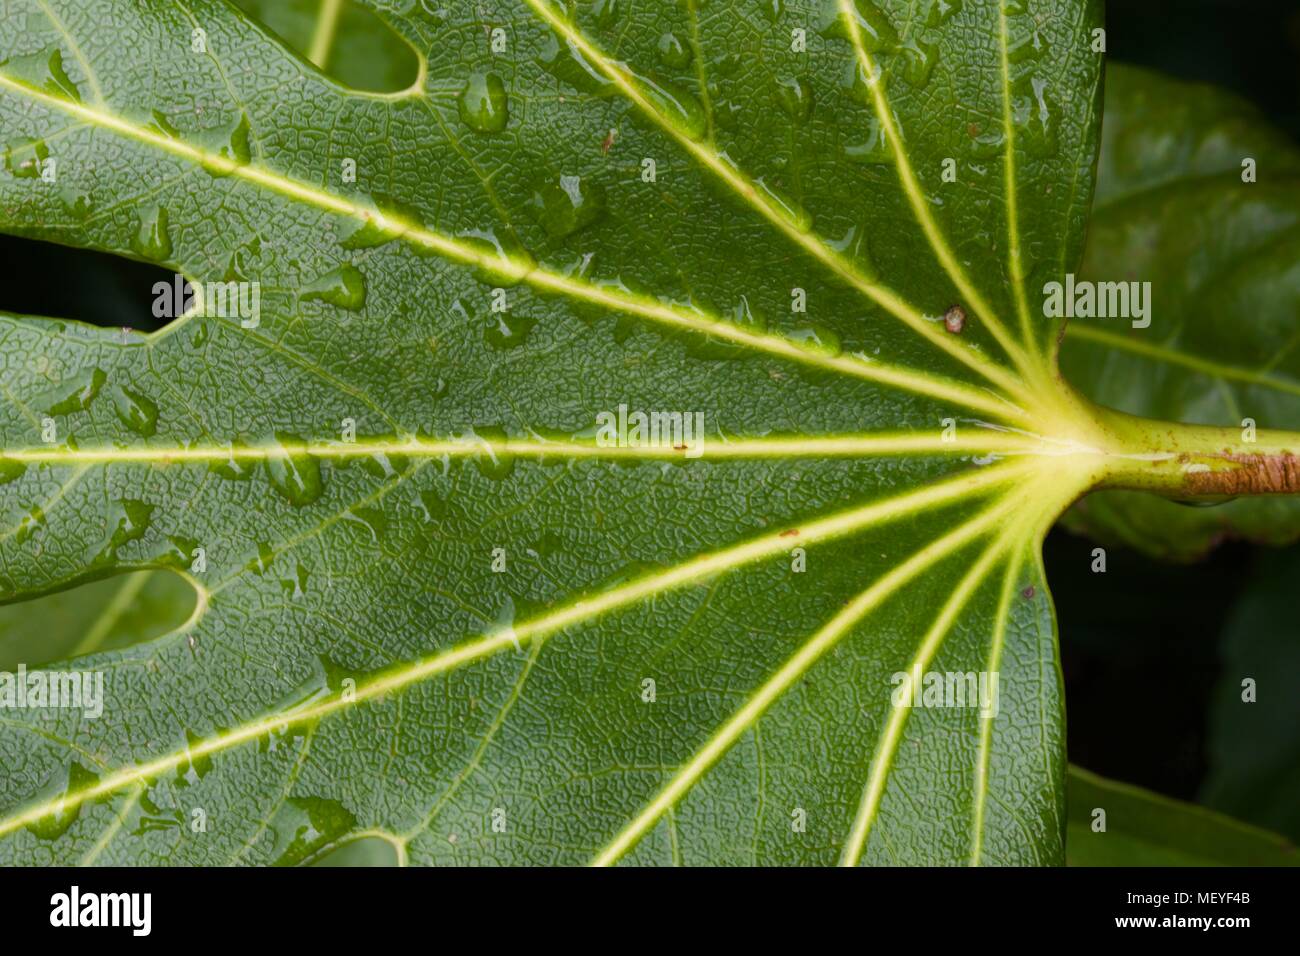 Fatsia japonica "aralia giapponese" Foto Stock